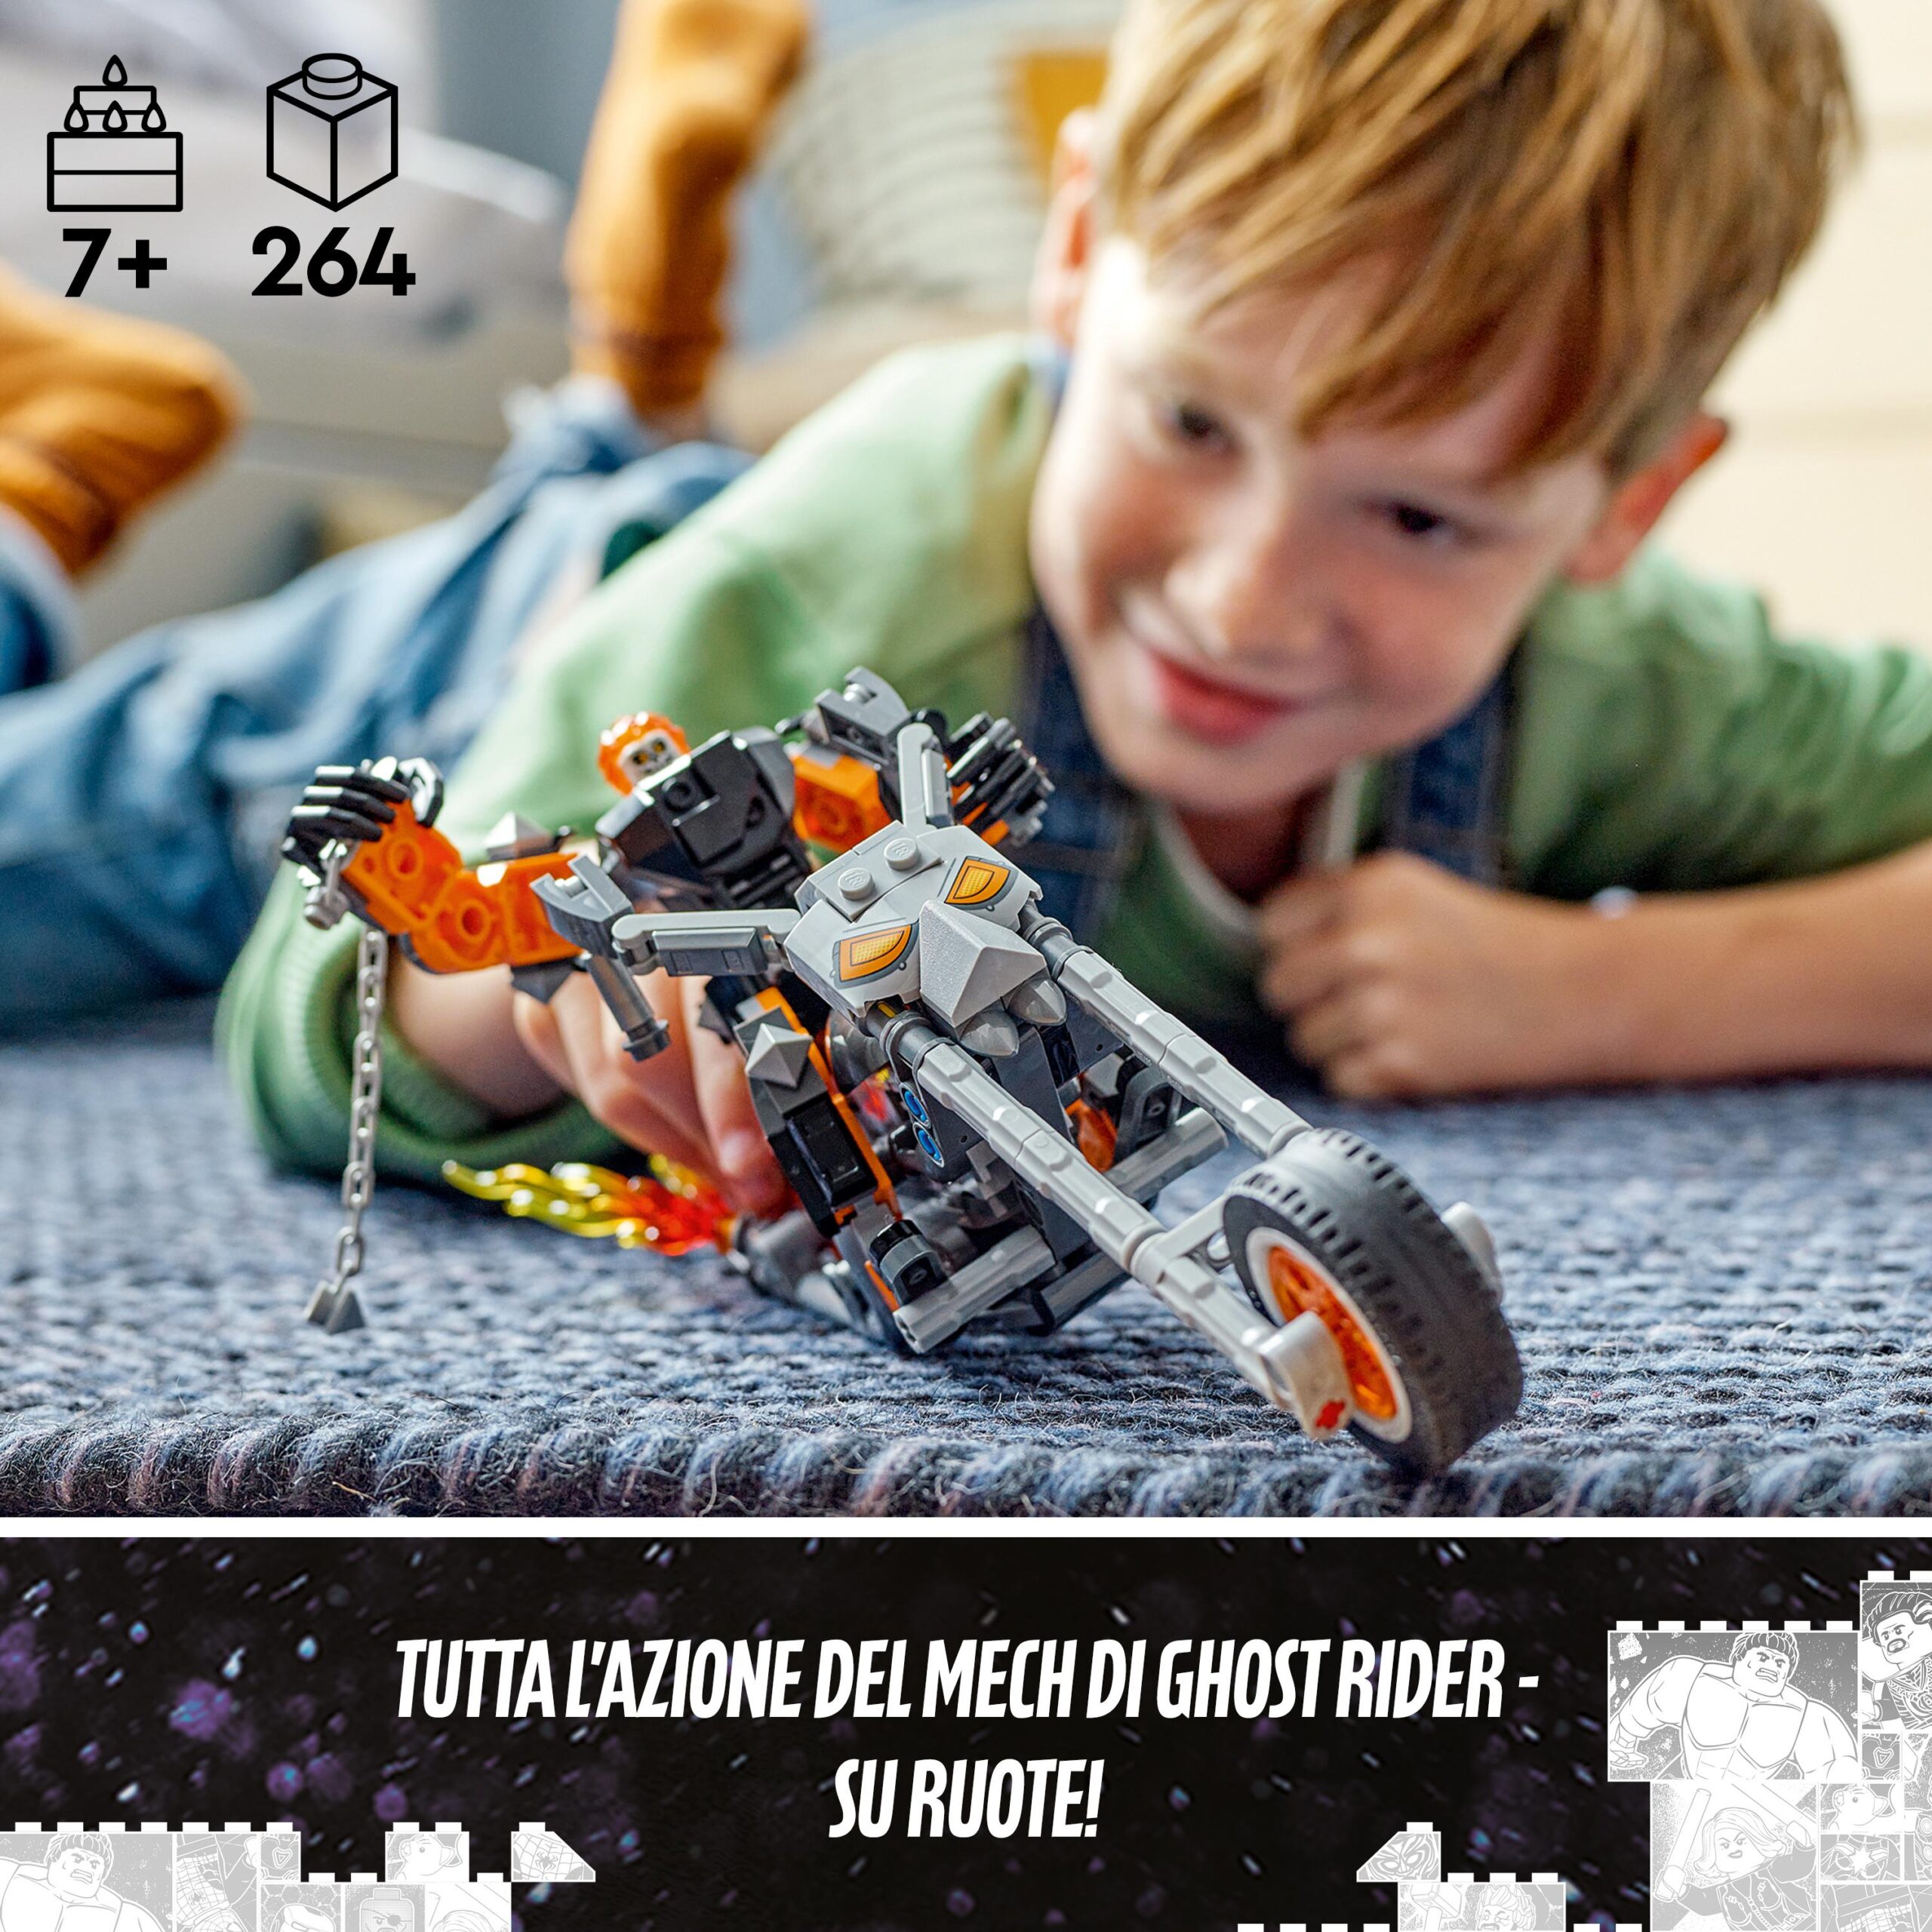 Lego marvel 76245 mech e moto di ghost rider, giocattolo con action figure snodabile di supereroe, idea regalo per bambini 7+ - LEGO SUPER HEROES